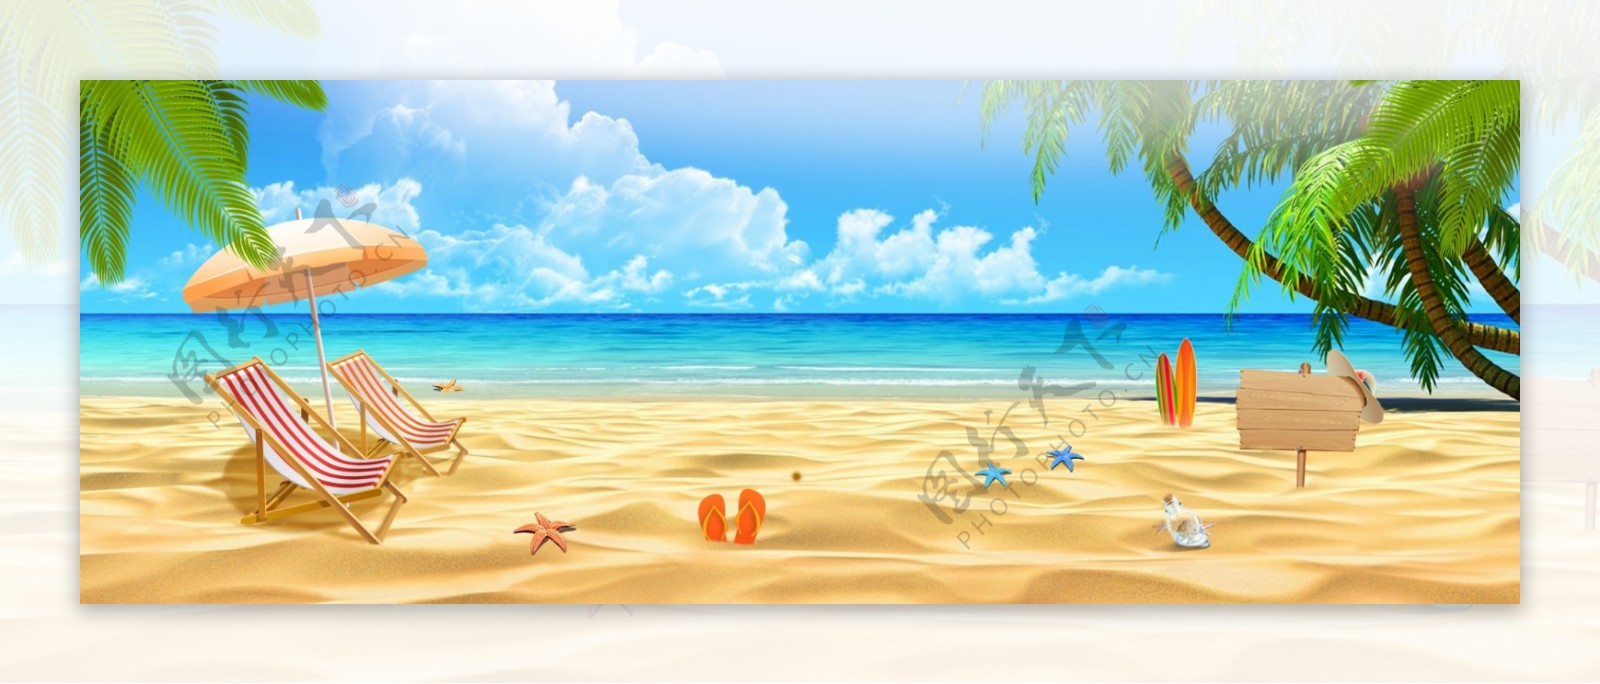 夏季海滩旅行海报banner